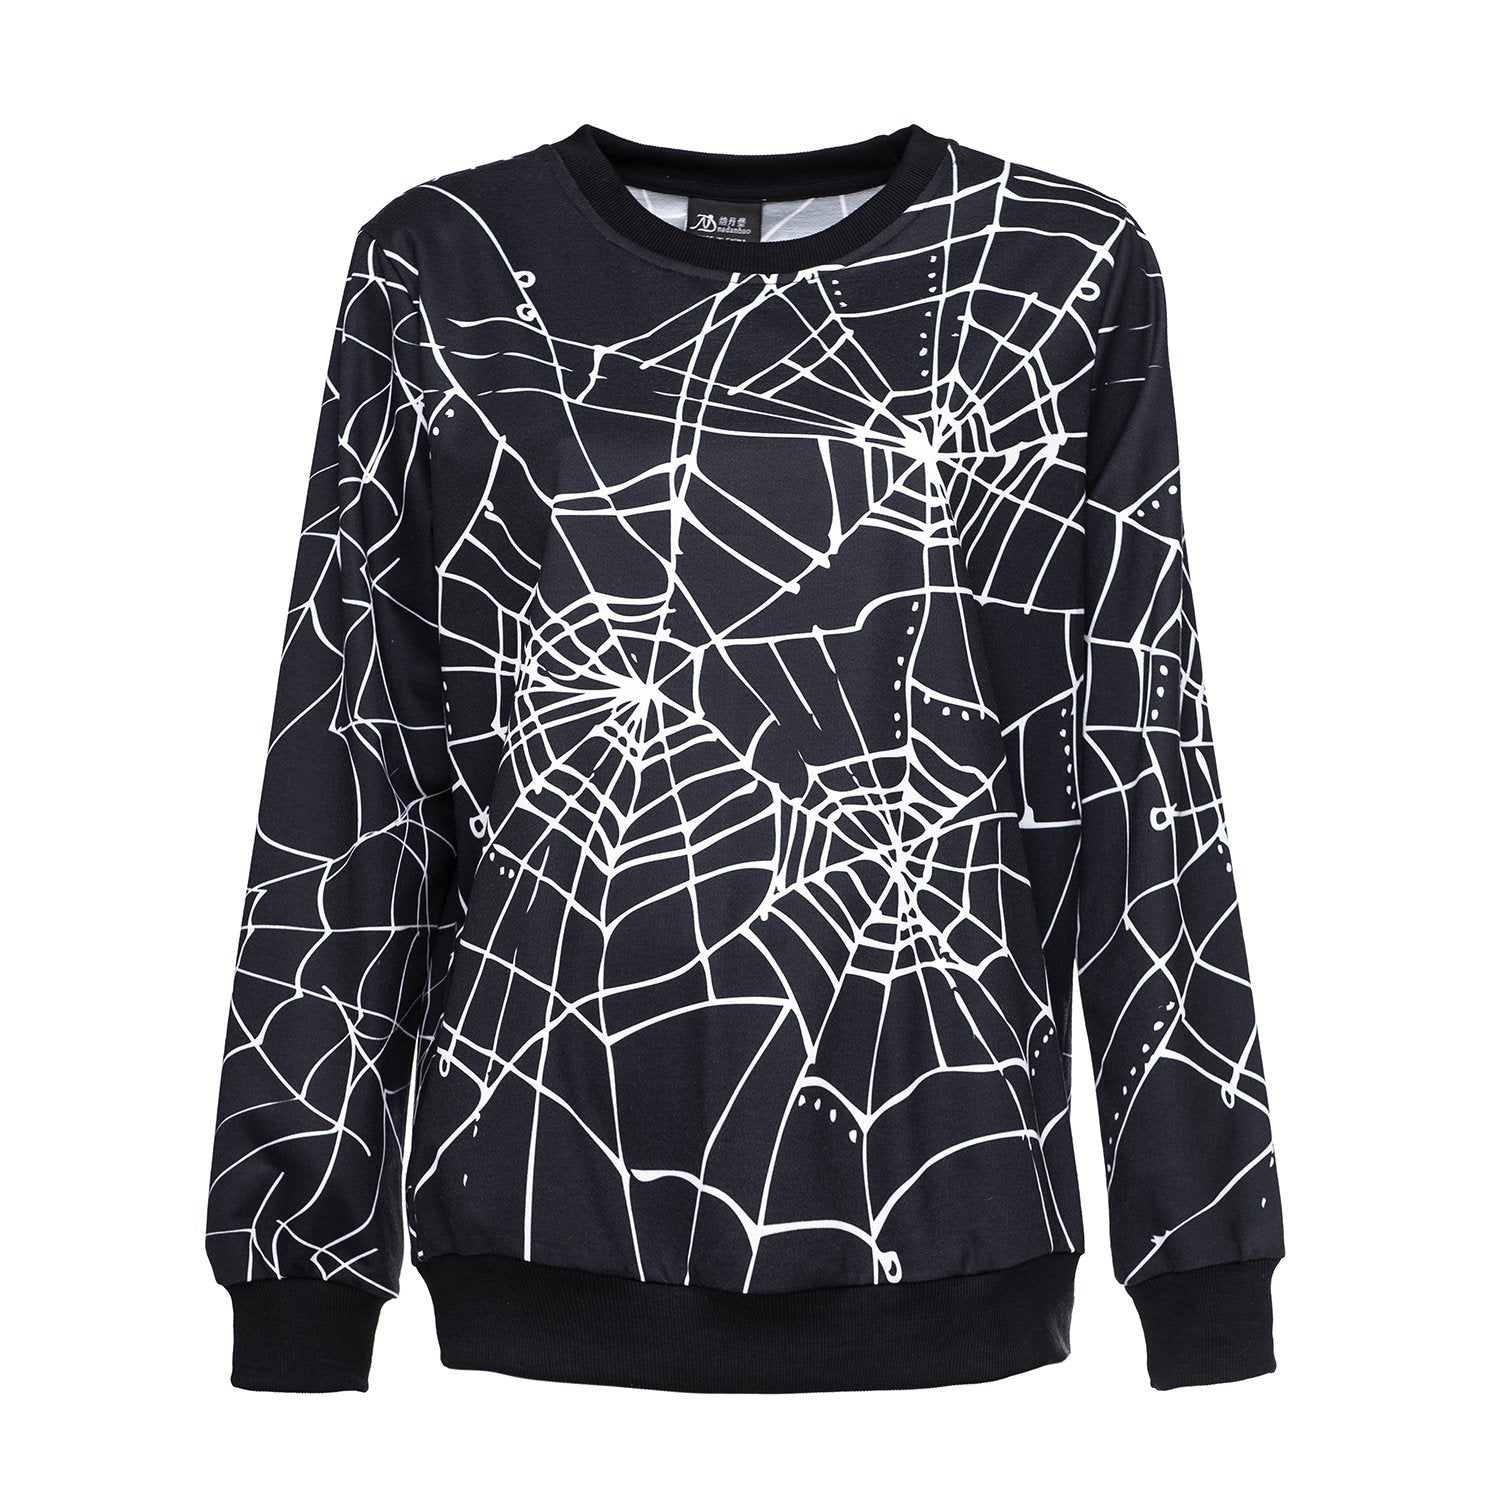 Halloween Horror Spider Web Dress Round Neck Sweater